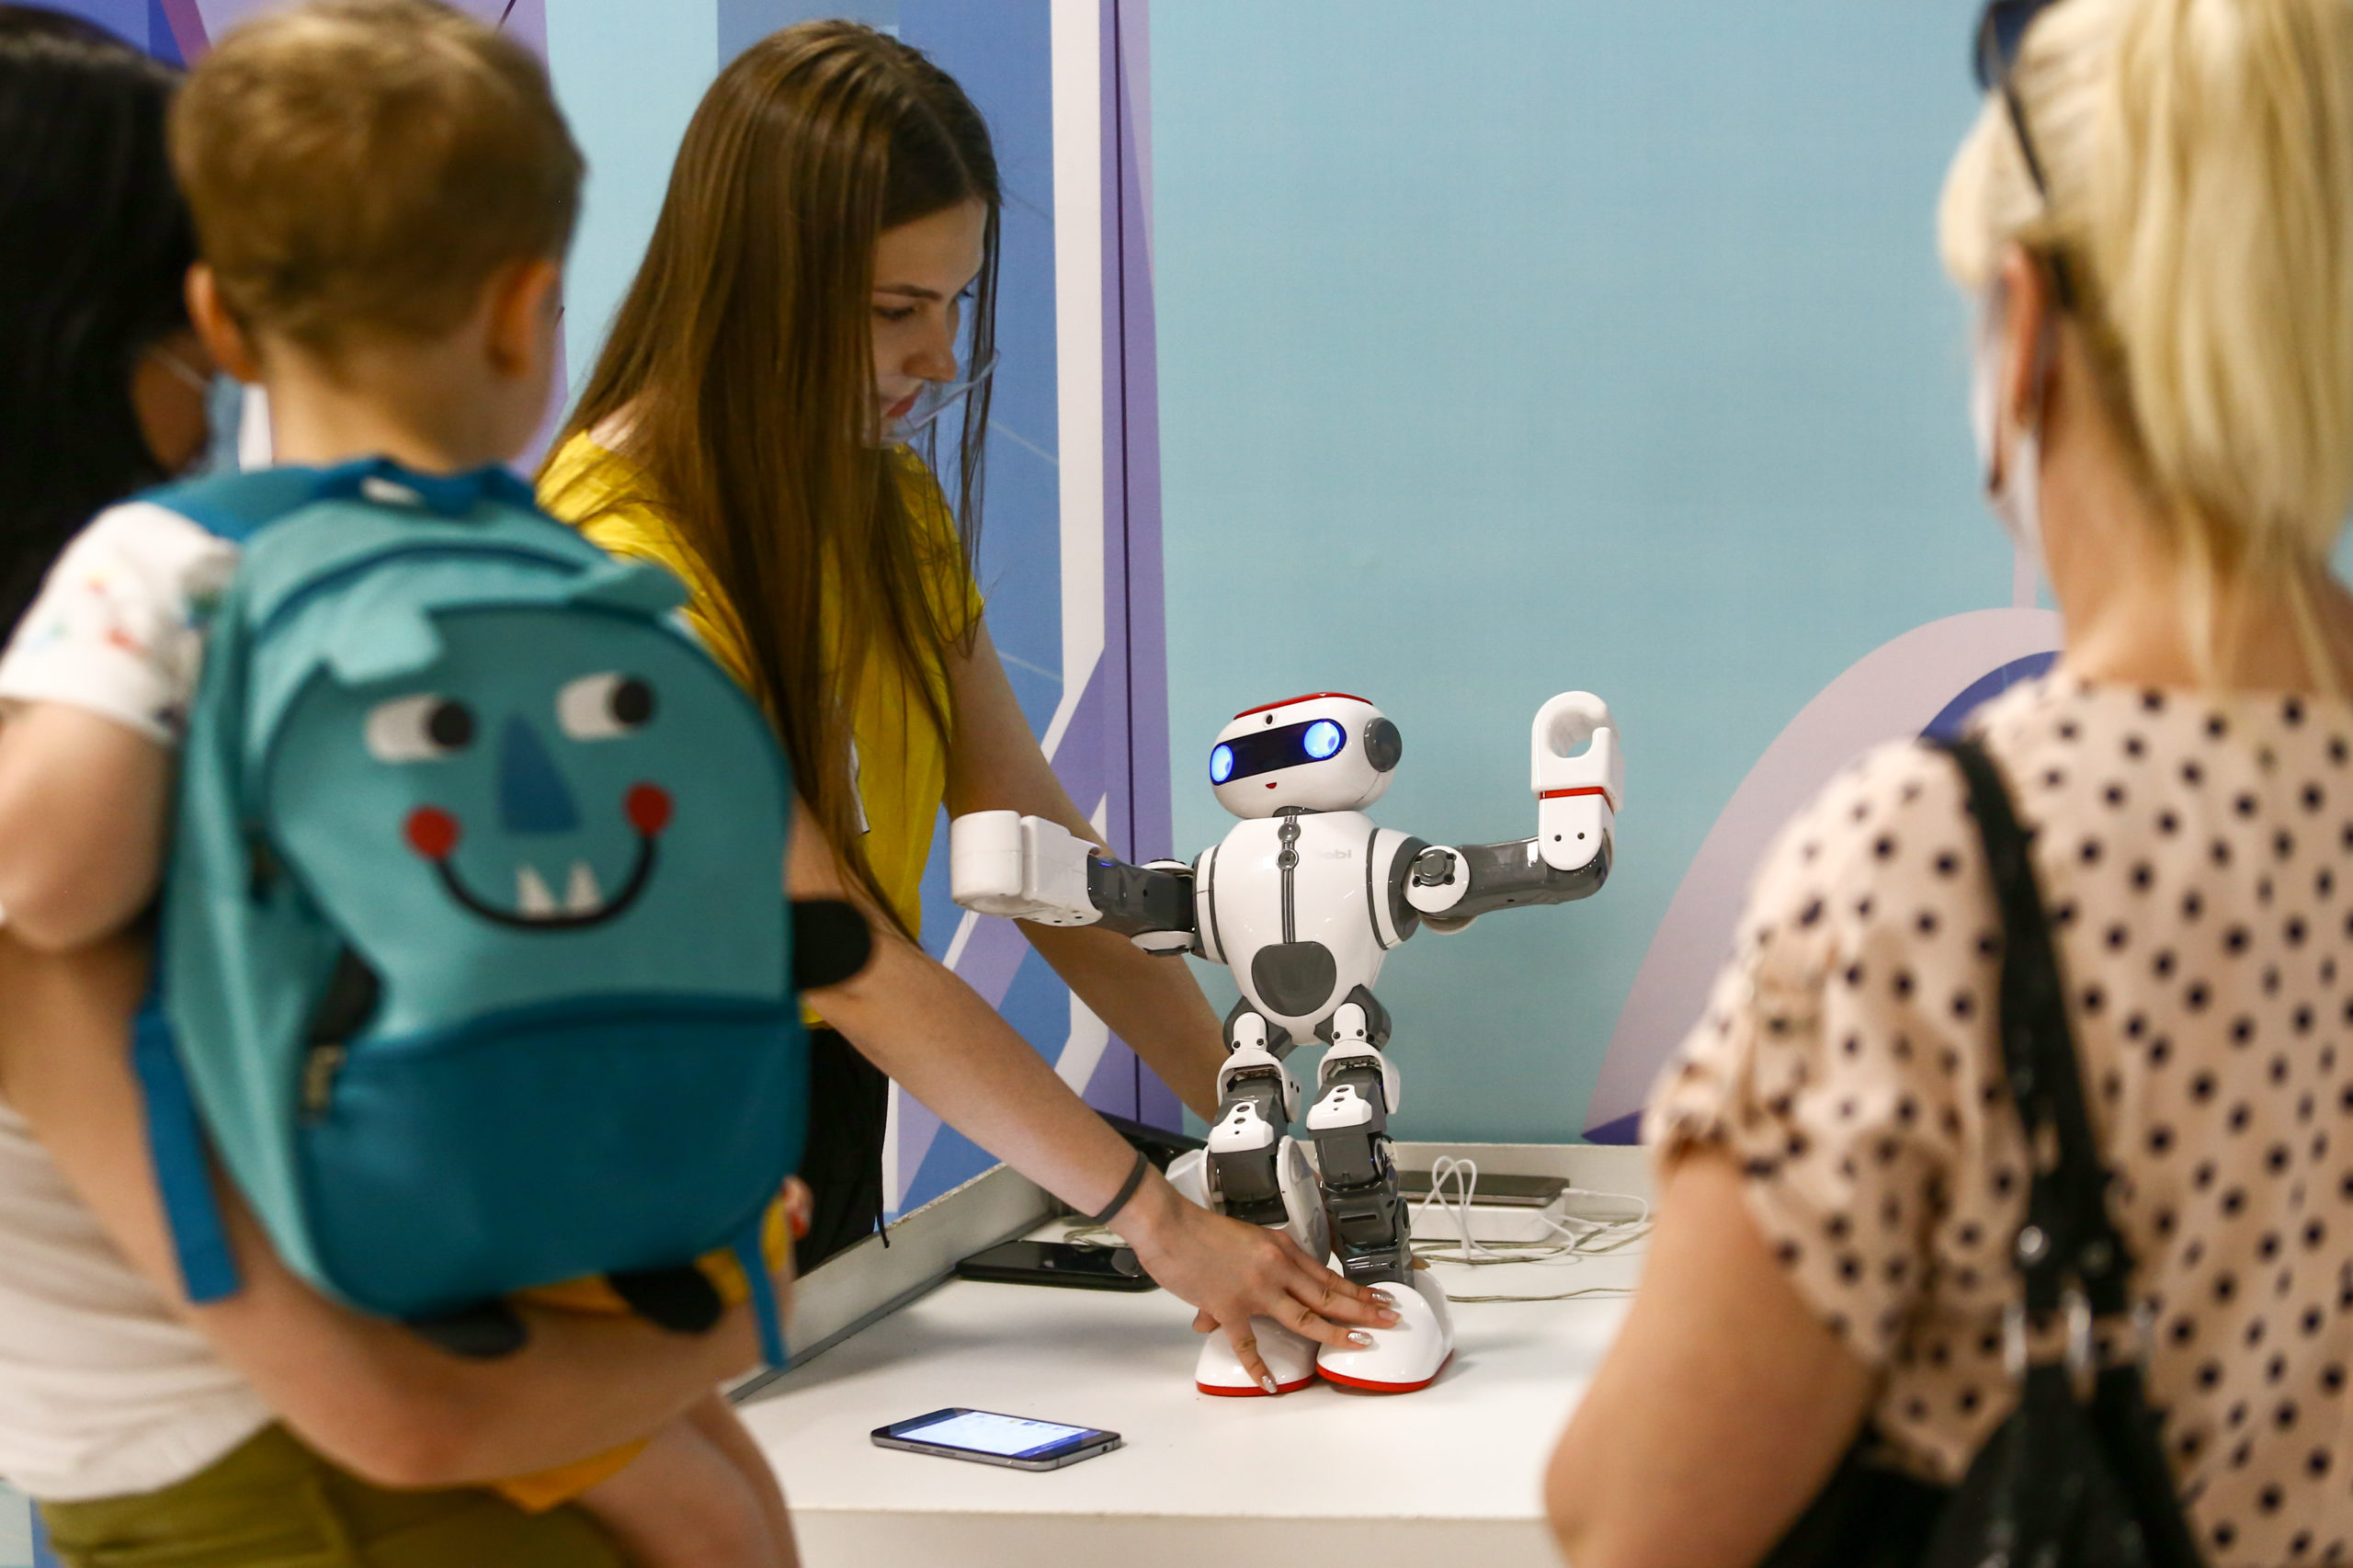 Interaktywna wystawa robotów i nowoczesnych technologii RoboExpo po raz pierwszy w twoim mieście!